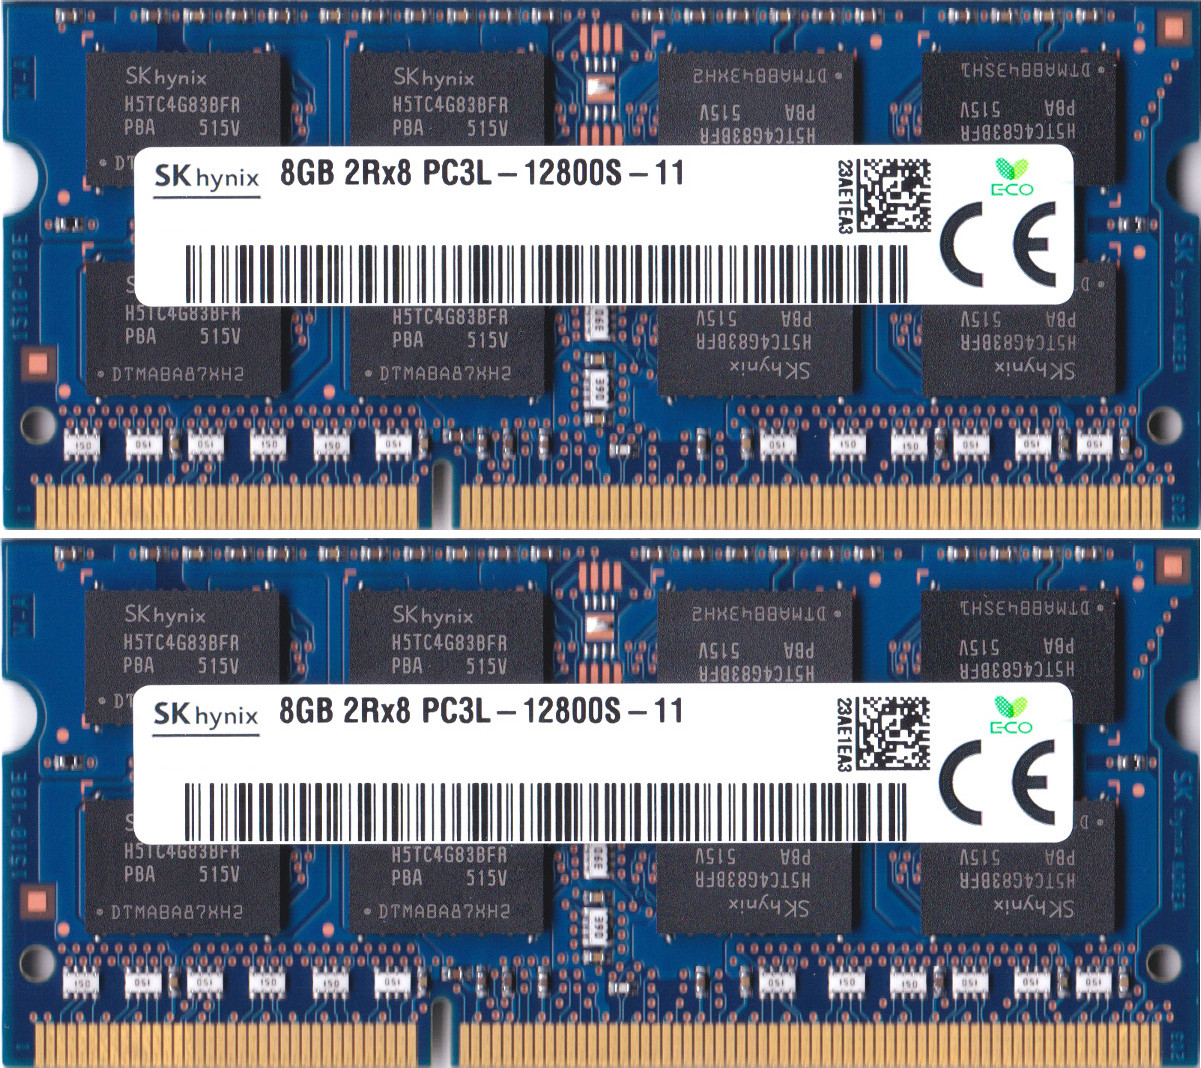 ポイント2倍】SK hynix PC3L-12800S (DDR3L-1600) 8GB x 2枚組み 合計16GB SO-DIMM 204pin  ノートパソコン用メモリ 低電圧(1.35V) 両面実装 (2Rx8)の2枚組 動作保証品 - www.edurng.go.th